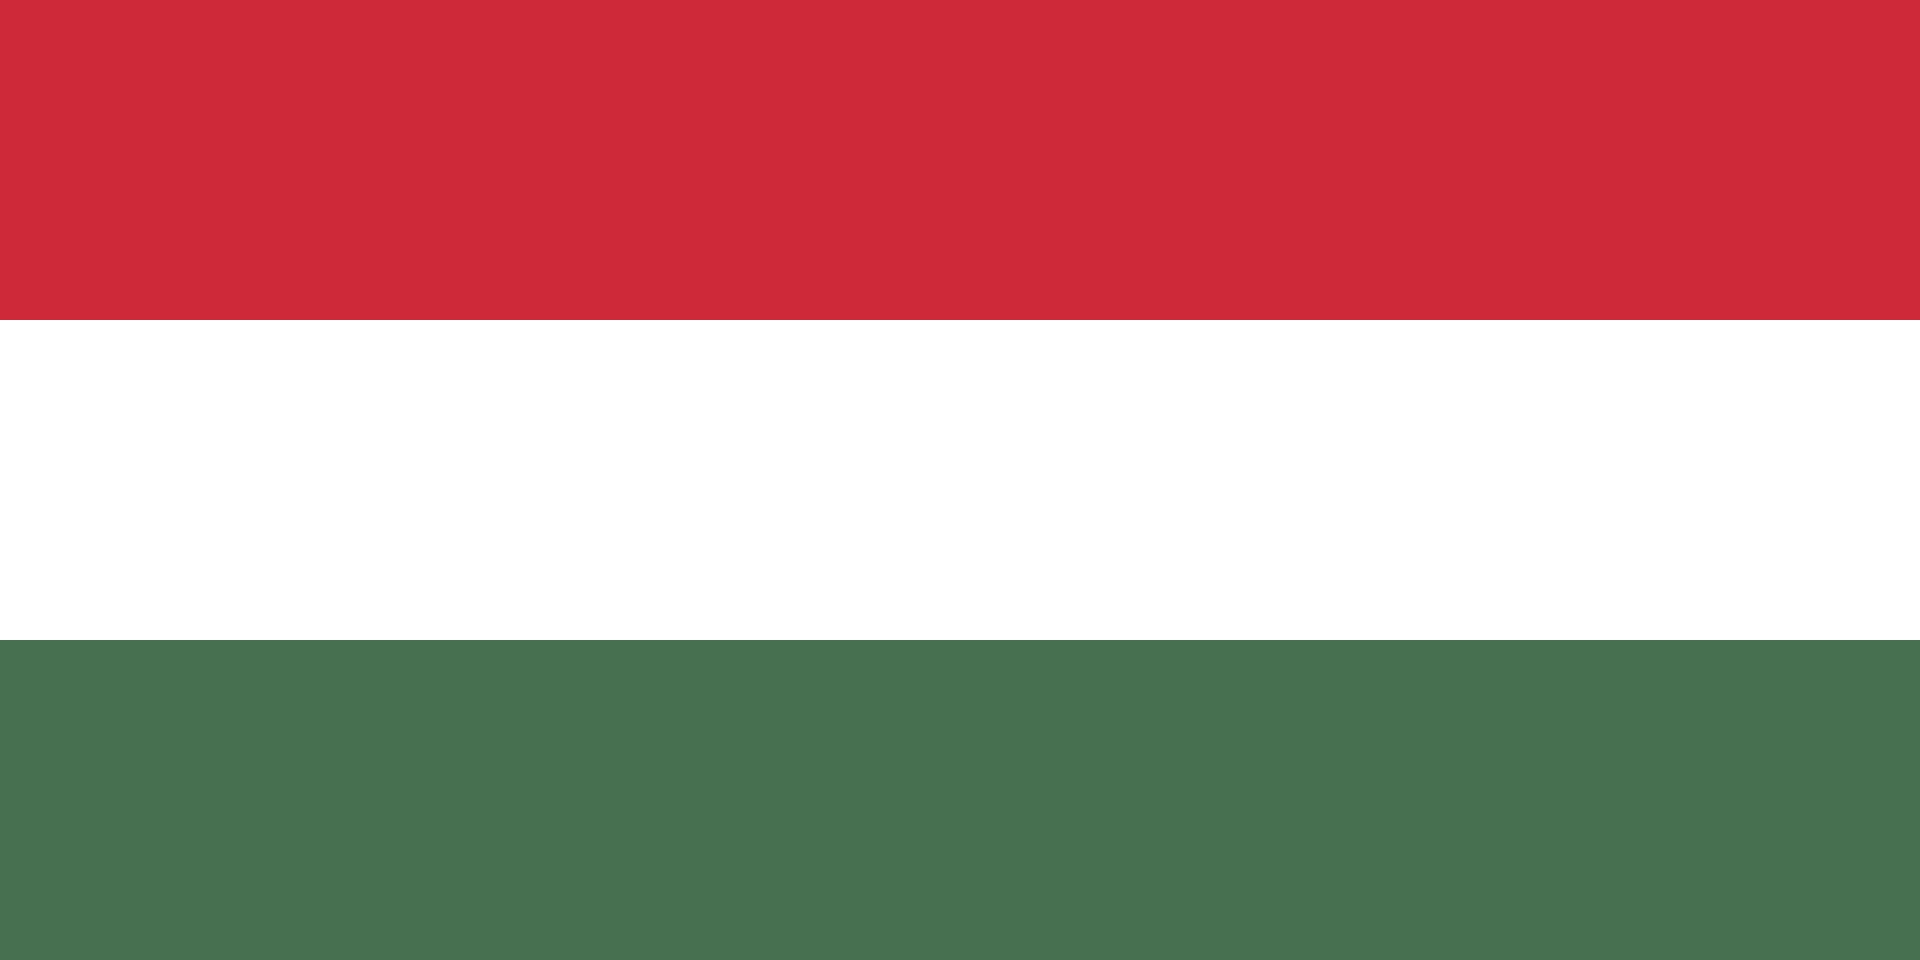 Hier sehen Sie die Flagge von Ungarn